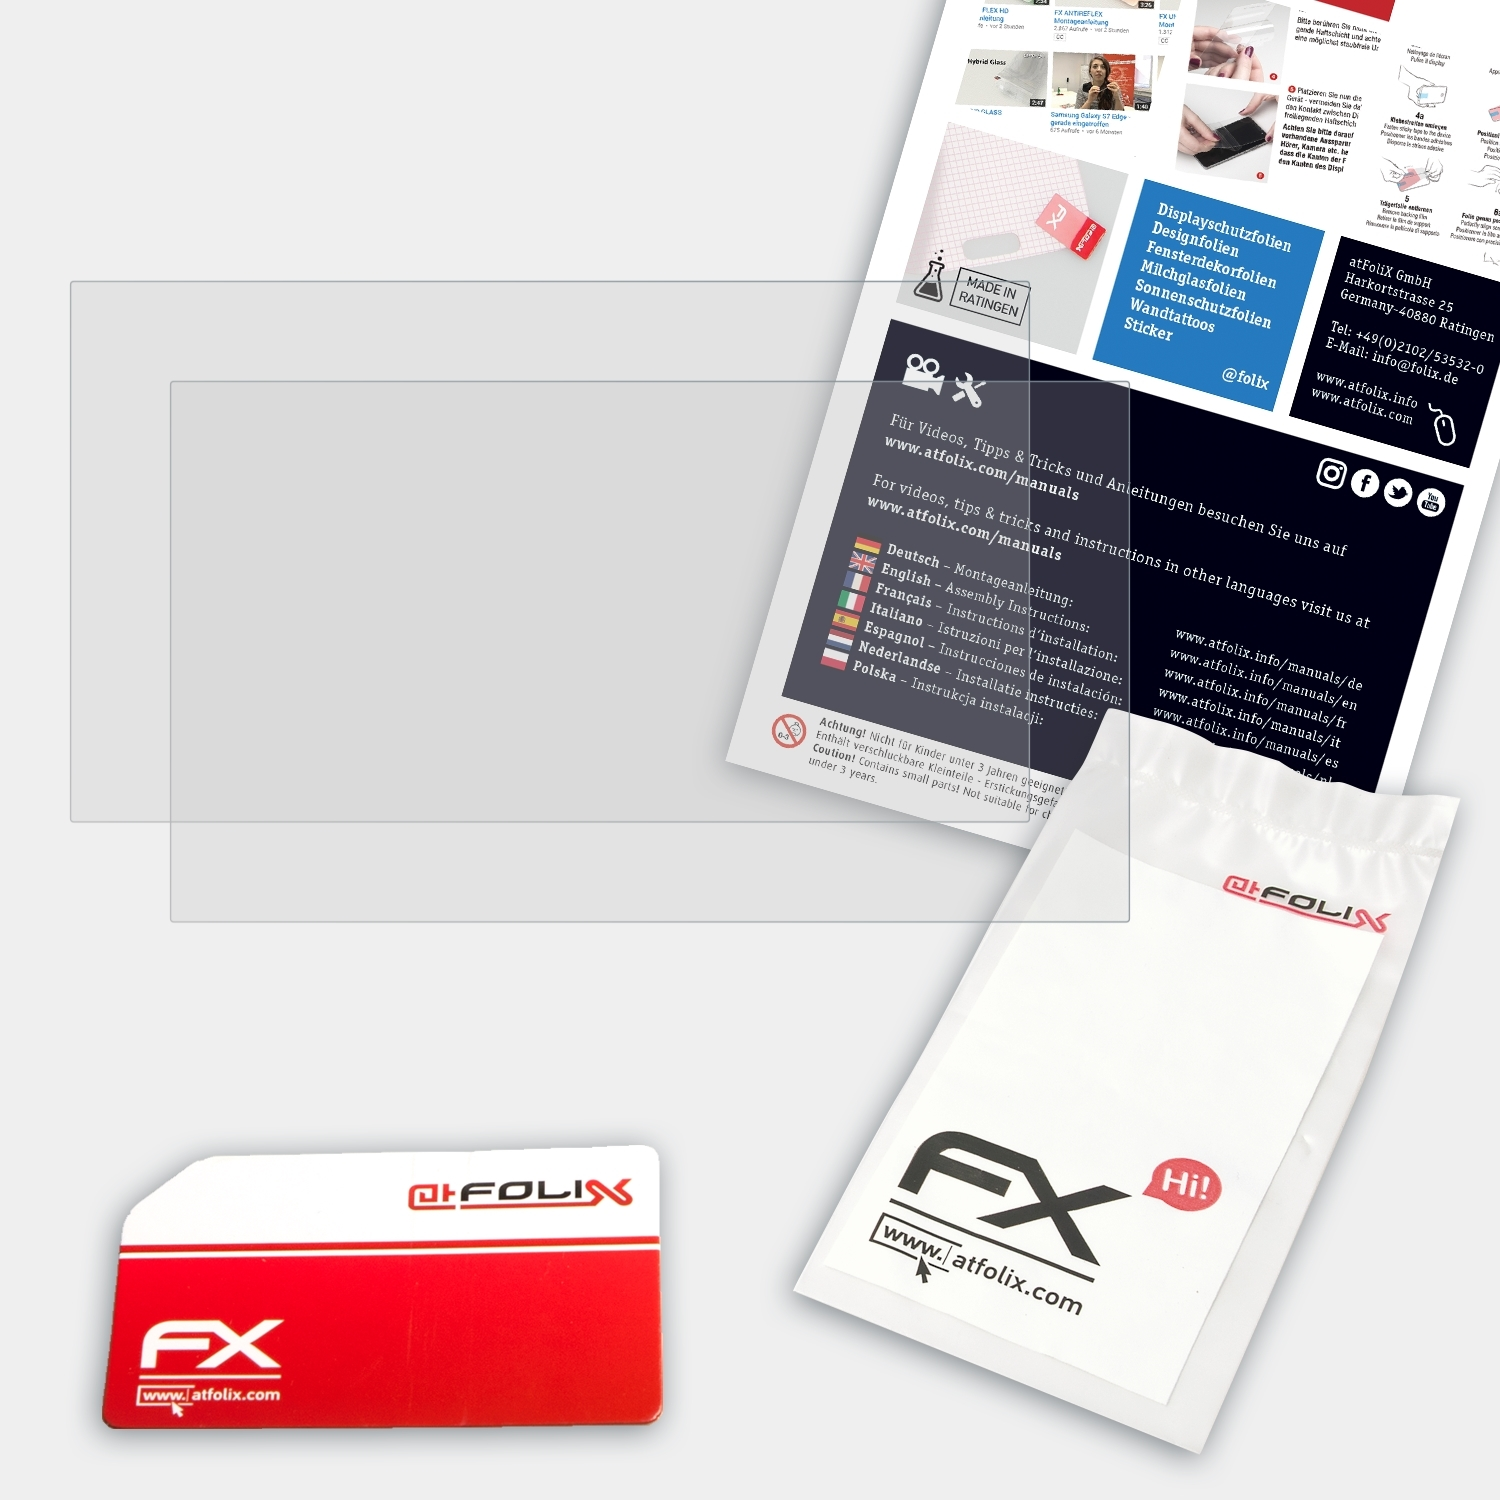 ATFOLIX 2x Toughbook Panasonic FX-Antireflex Displayschutz(für 55)